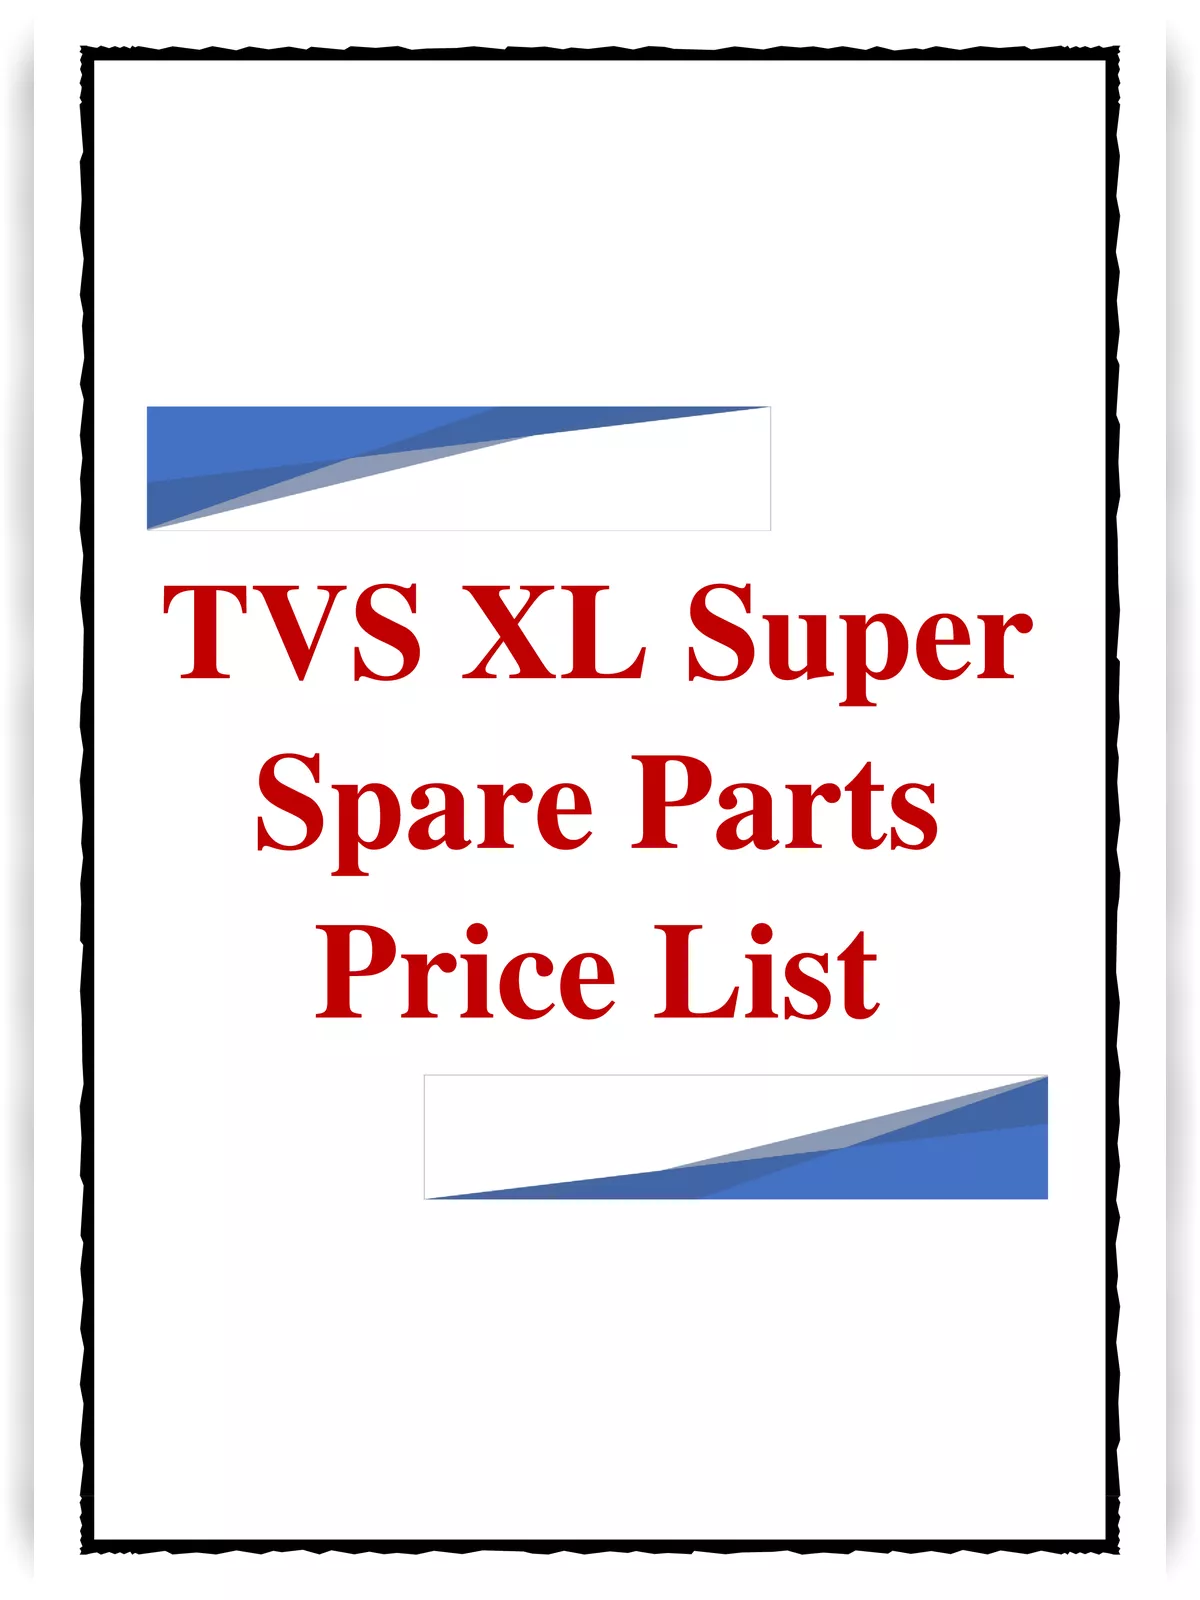 TVS XL Super Spare Parts Price List